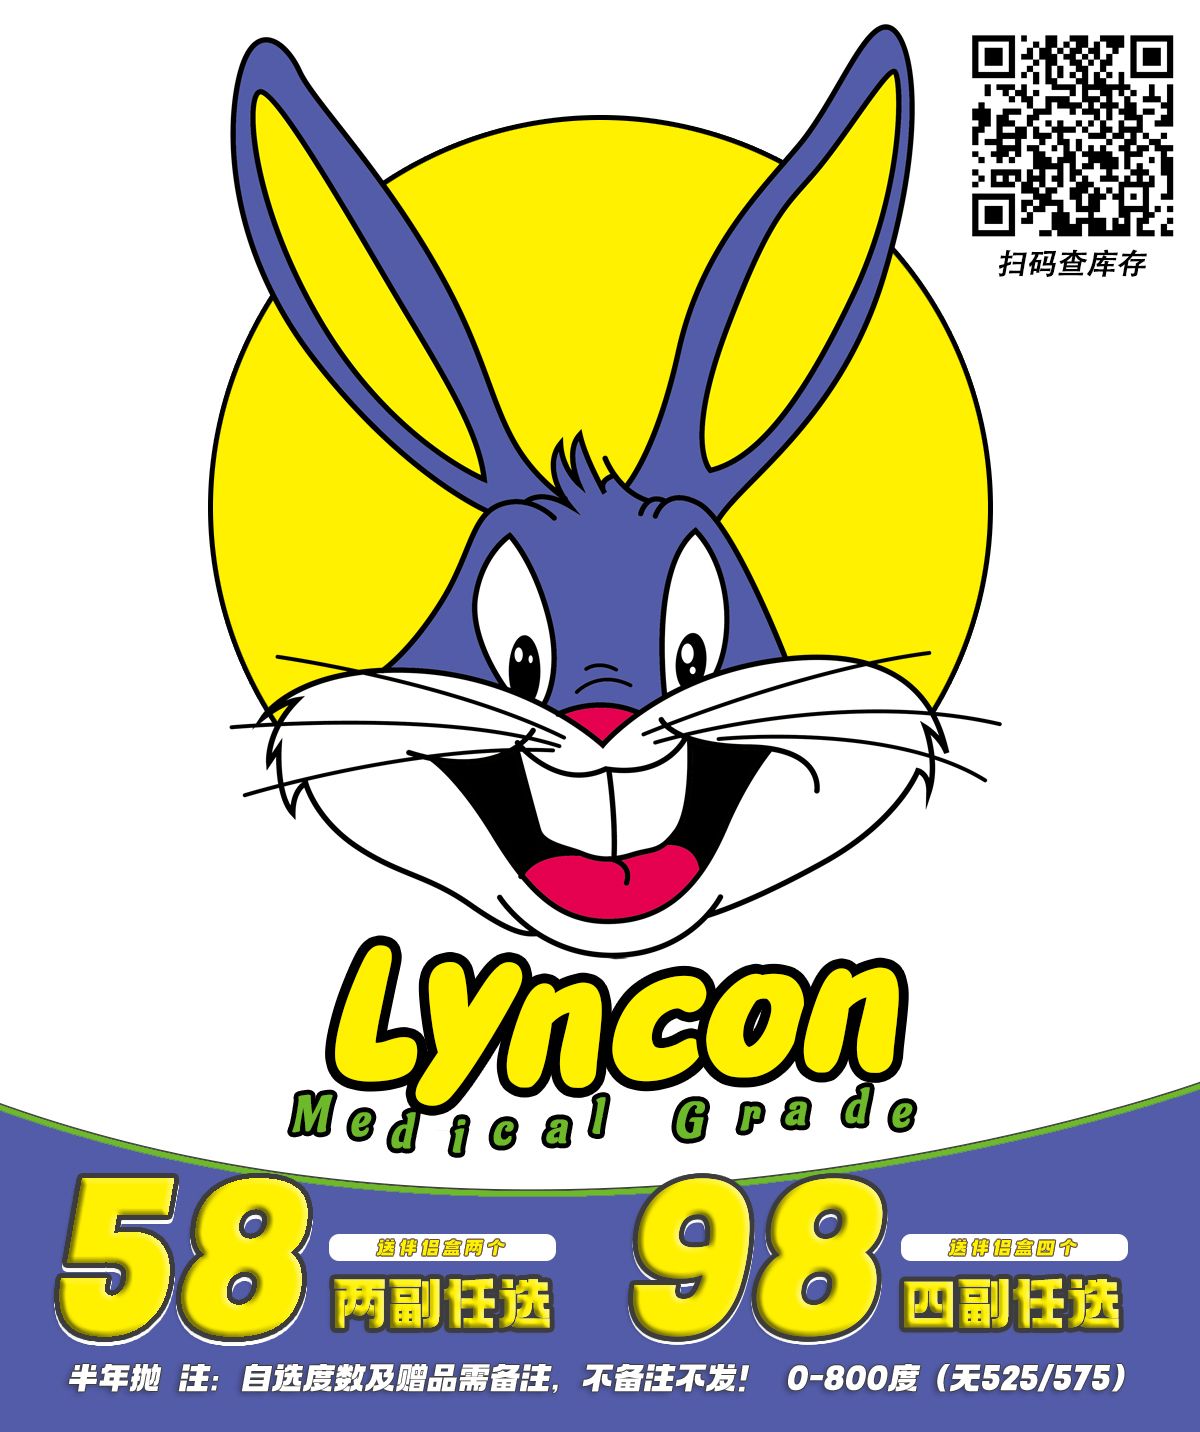 【半年抛】Lyncon 又又又上新啦 跟上步伐备战51出游季